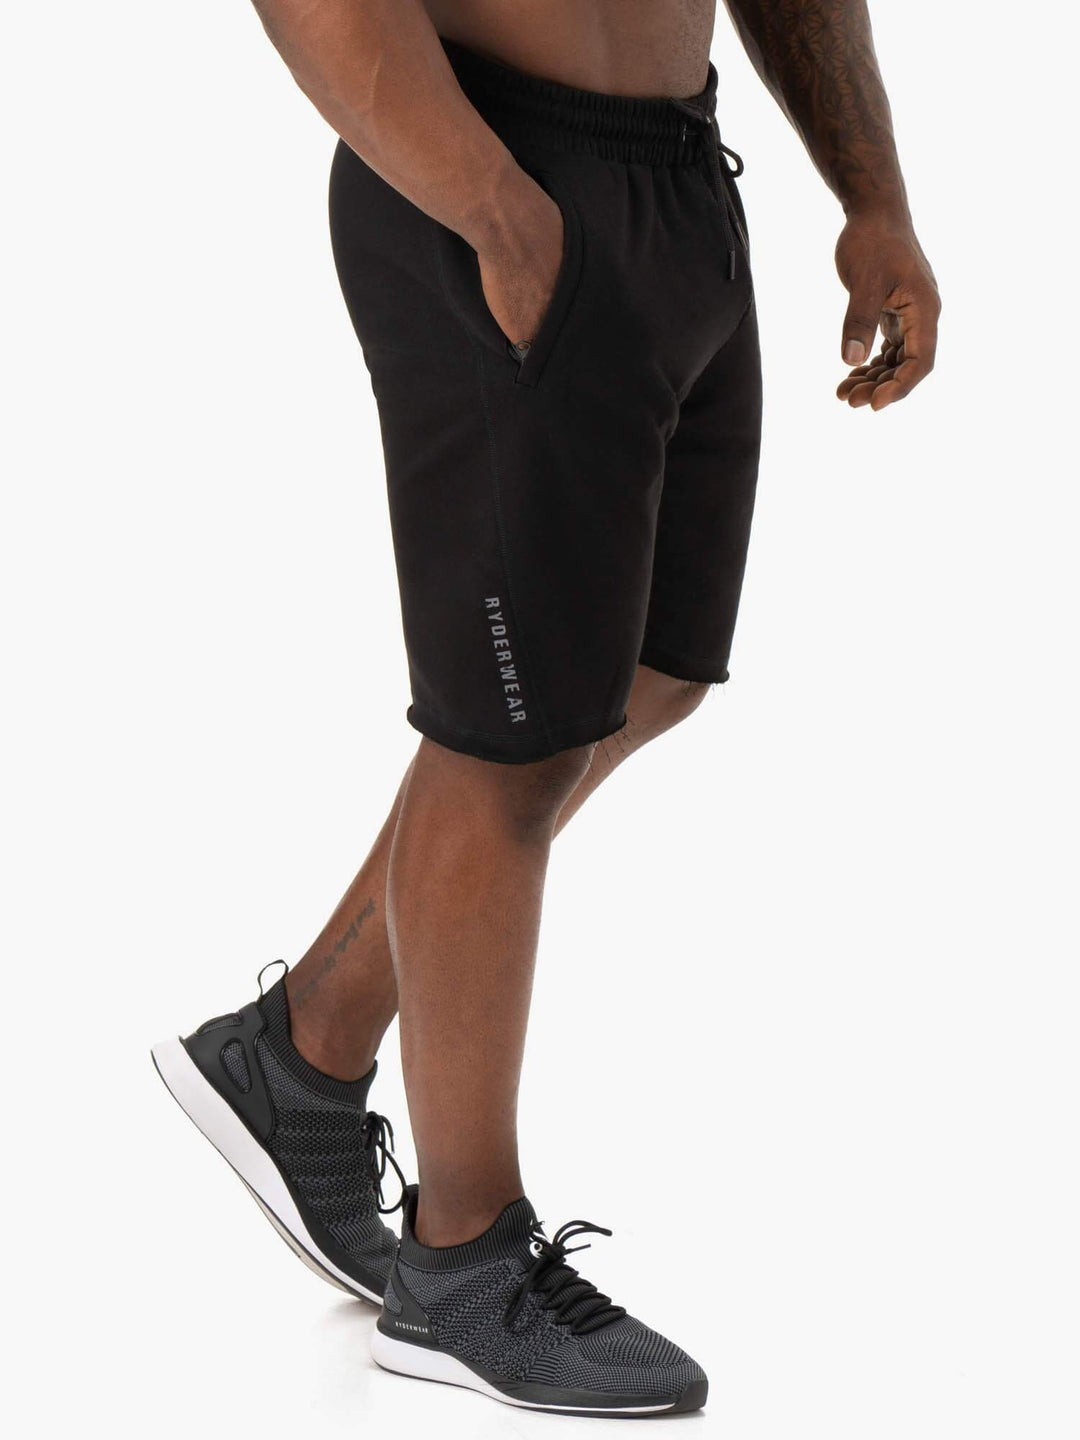 Iron Track Shorts - Black Clothing Ryderwear 